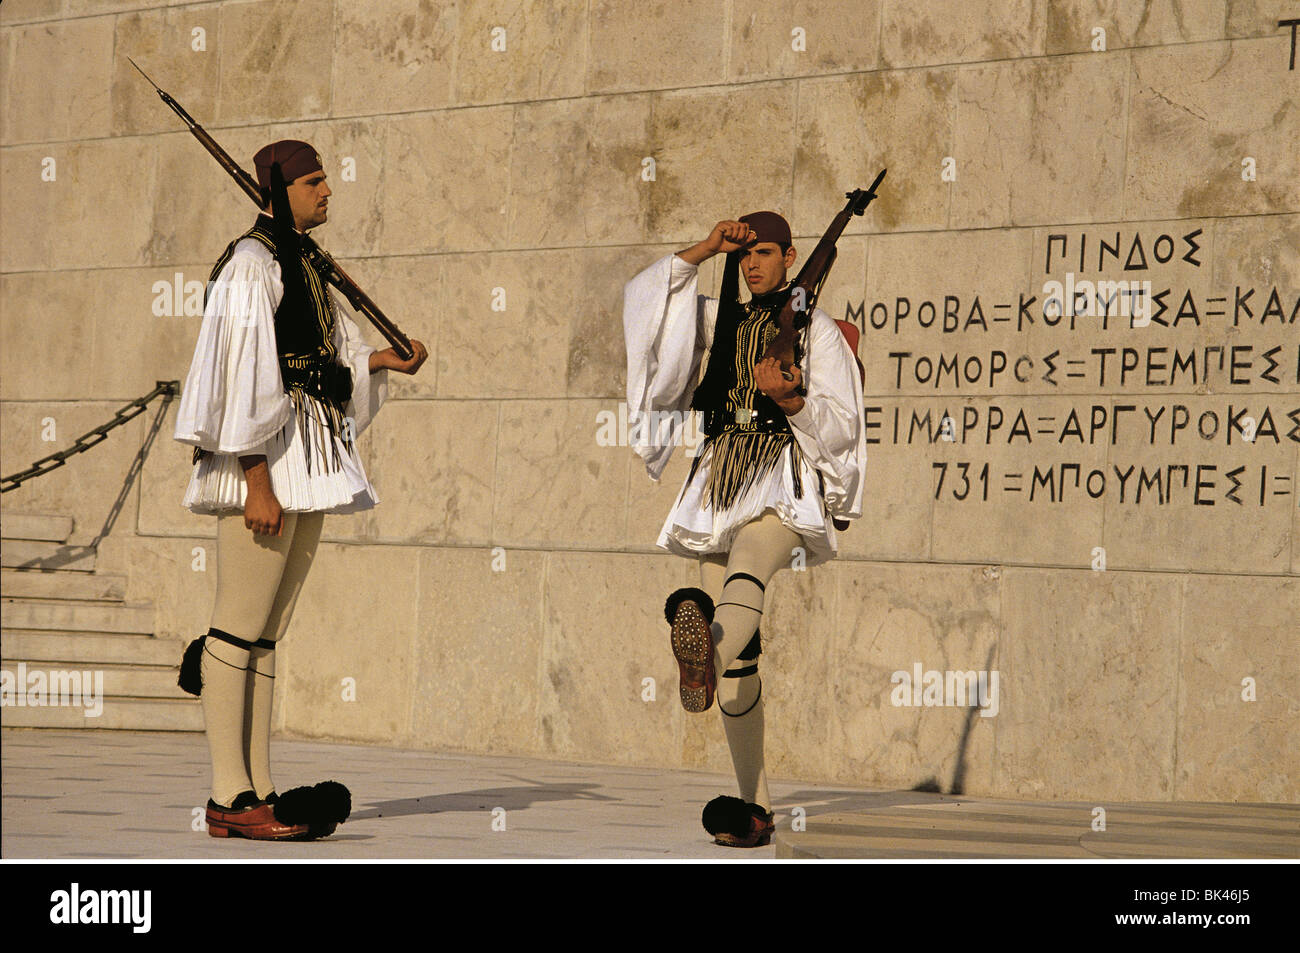 Proedriki Froura (Präsidentengarde) Mazedonisch (Winterdienst) Uniformen am Grab des unbekannten Soldaten, Athen Stockfoto